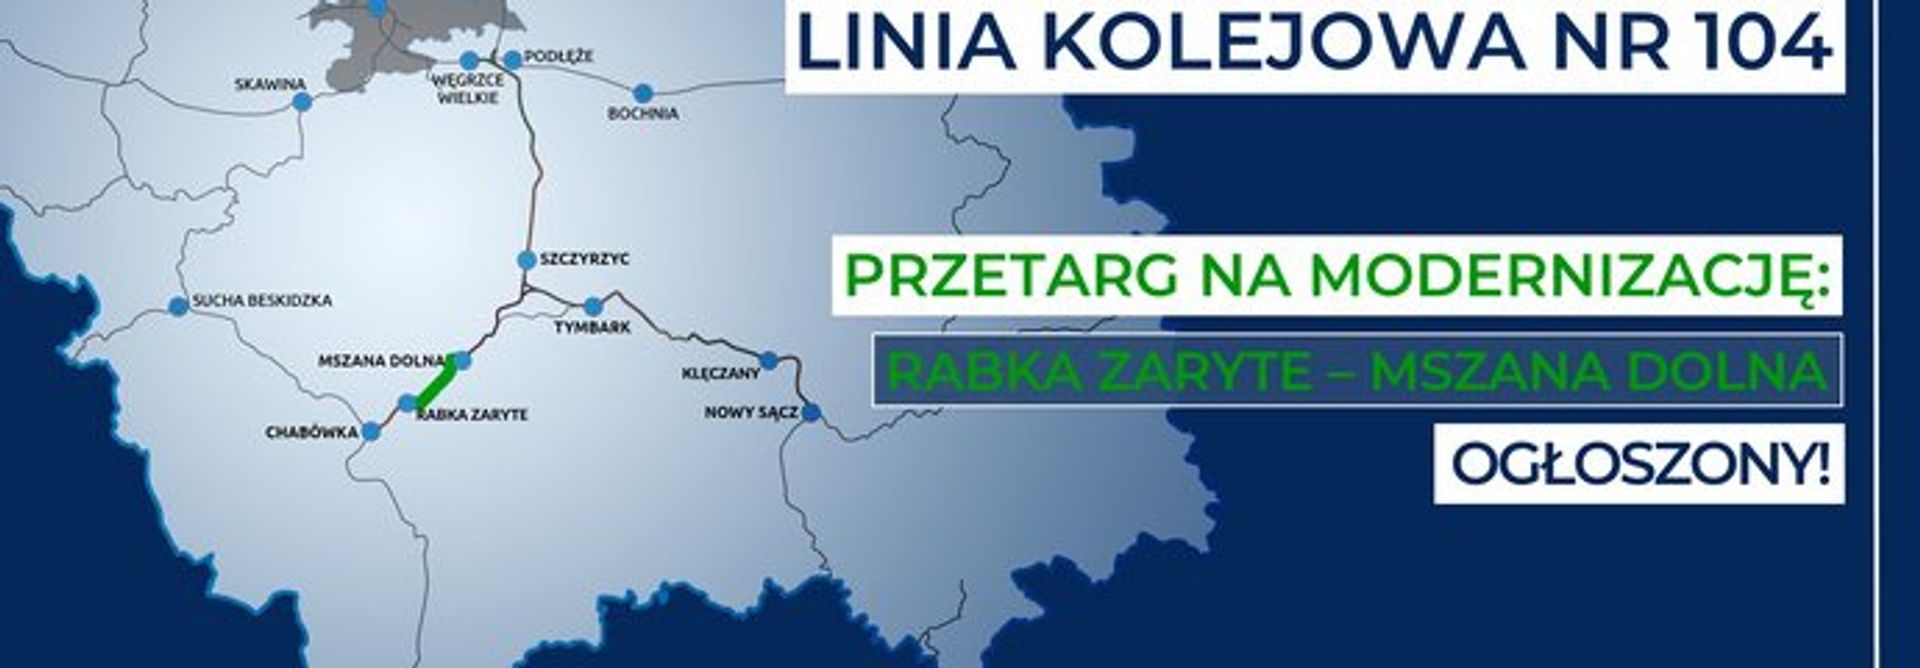 Małopolska zyska nowe połączenie, dzięki modernizacji linii kolejowej Chabówka – Nowy Sącz